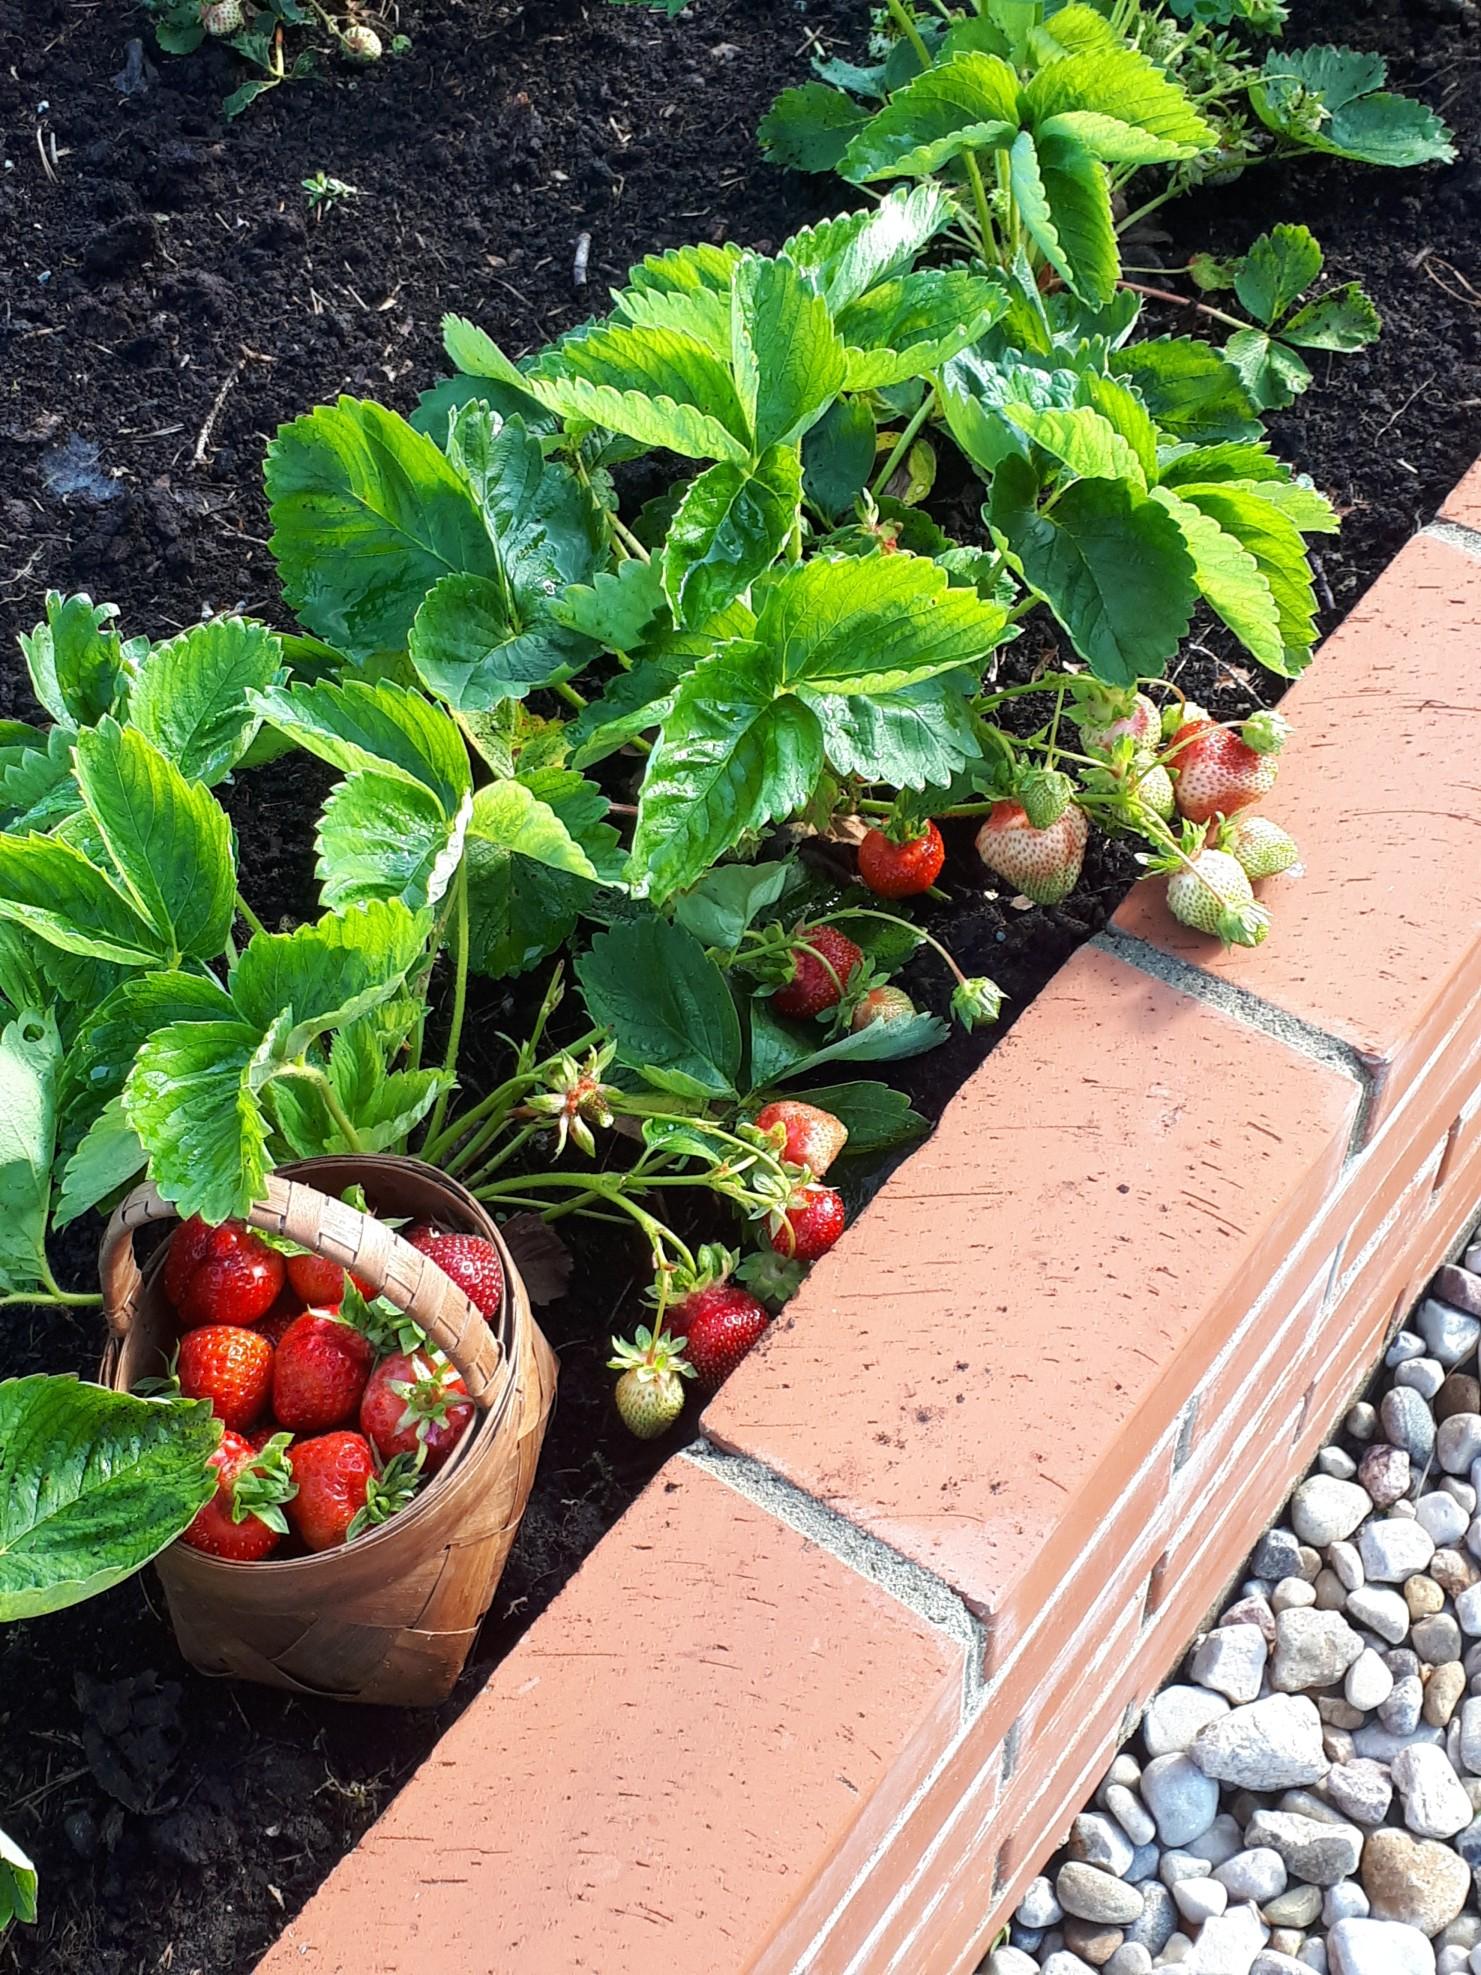 Raised brick vegetable garden with strawberries planted in dark mulch.